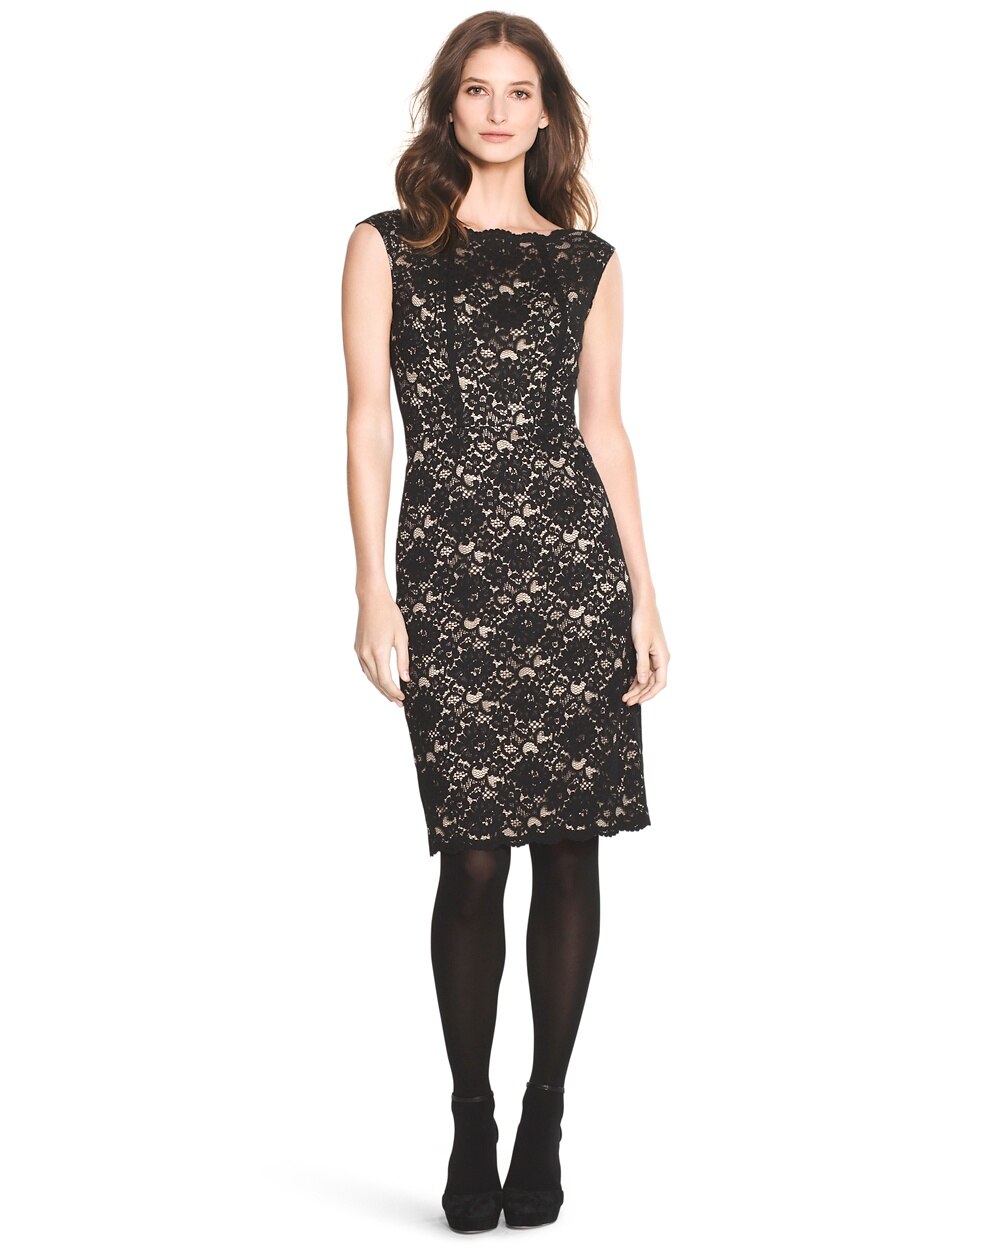 Lace Overlay Sheath Dress - White House Black Market